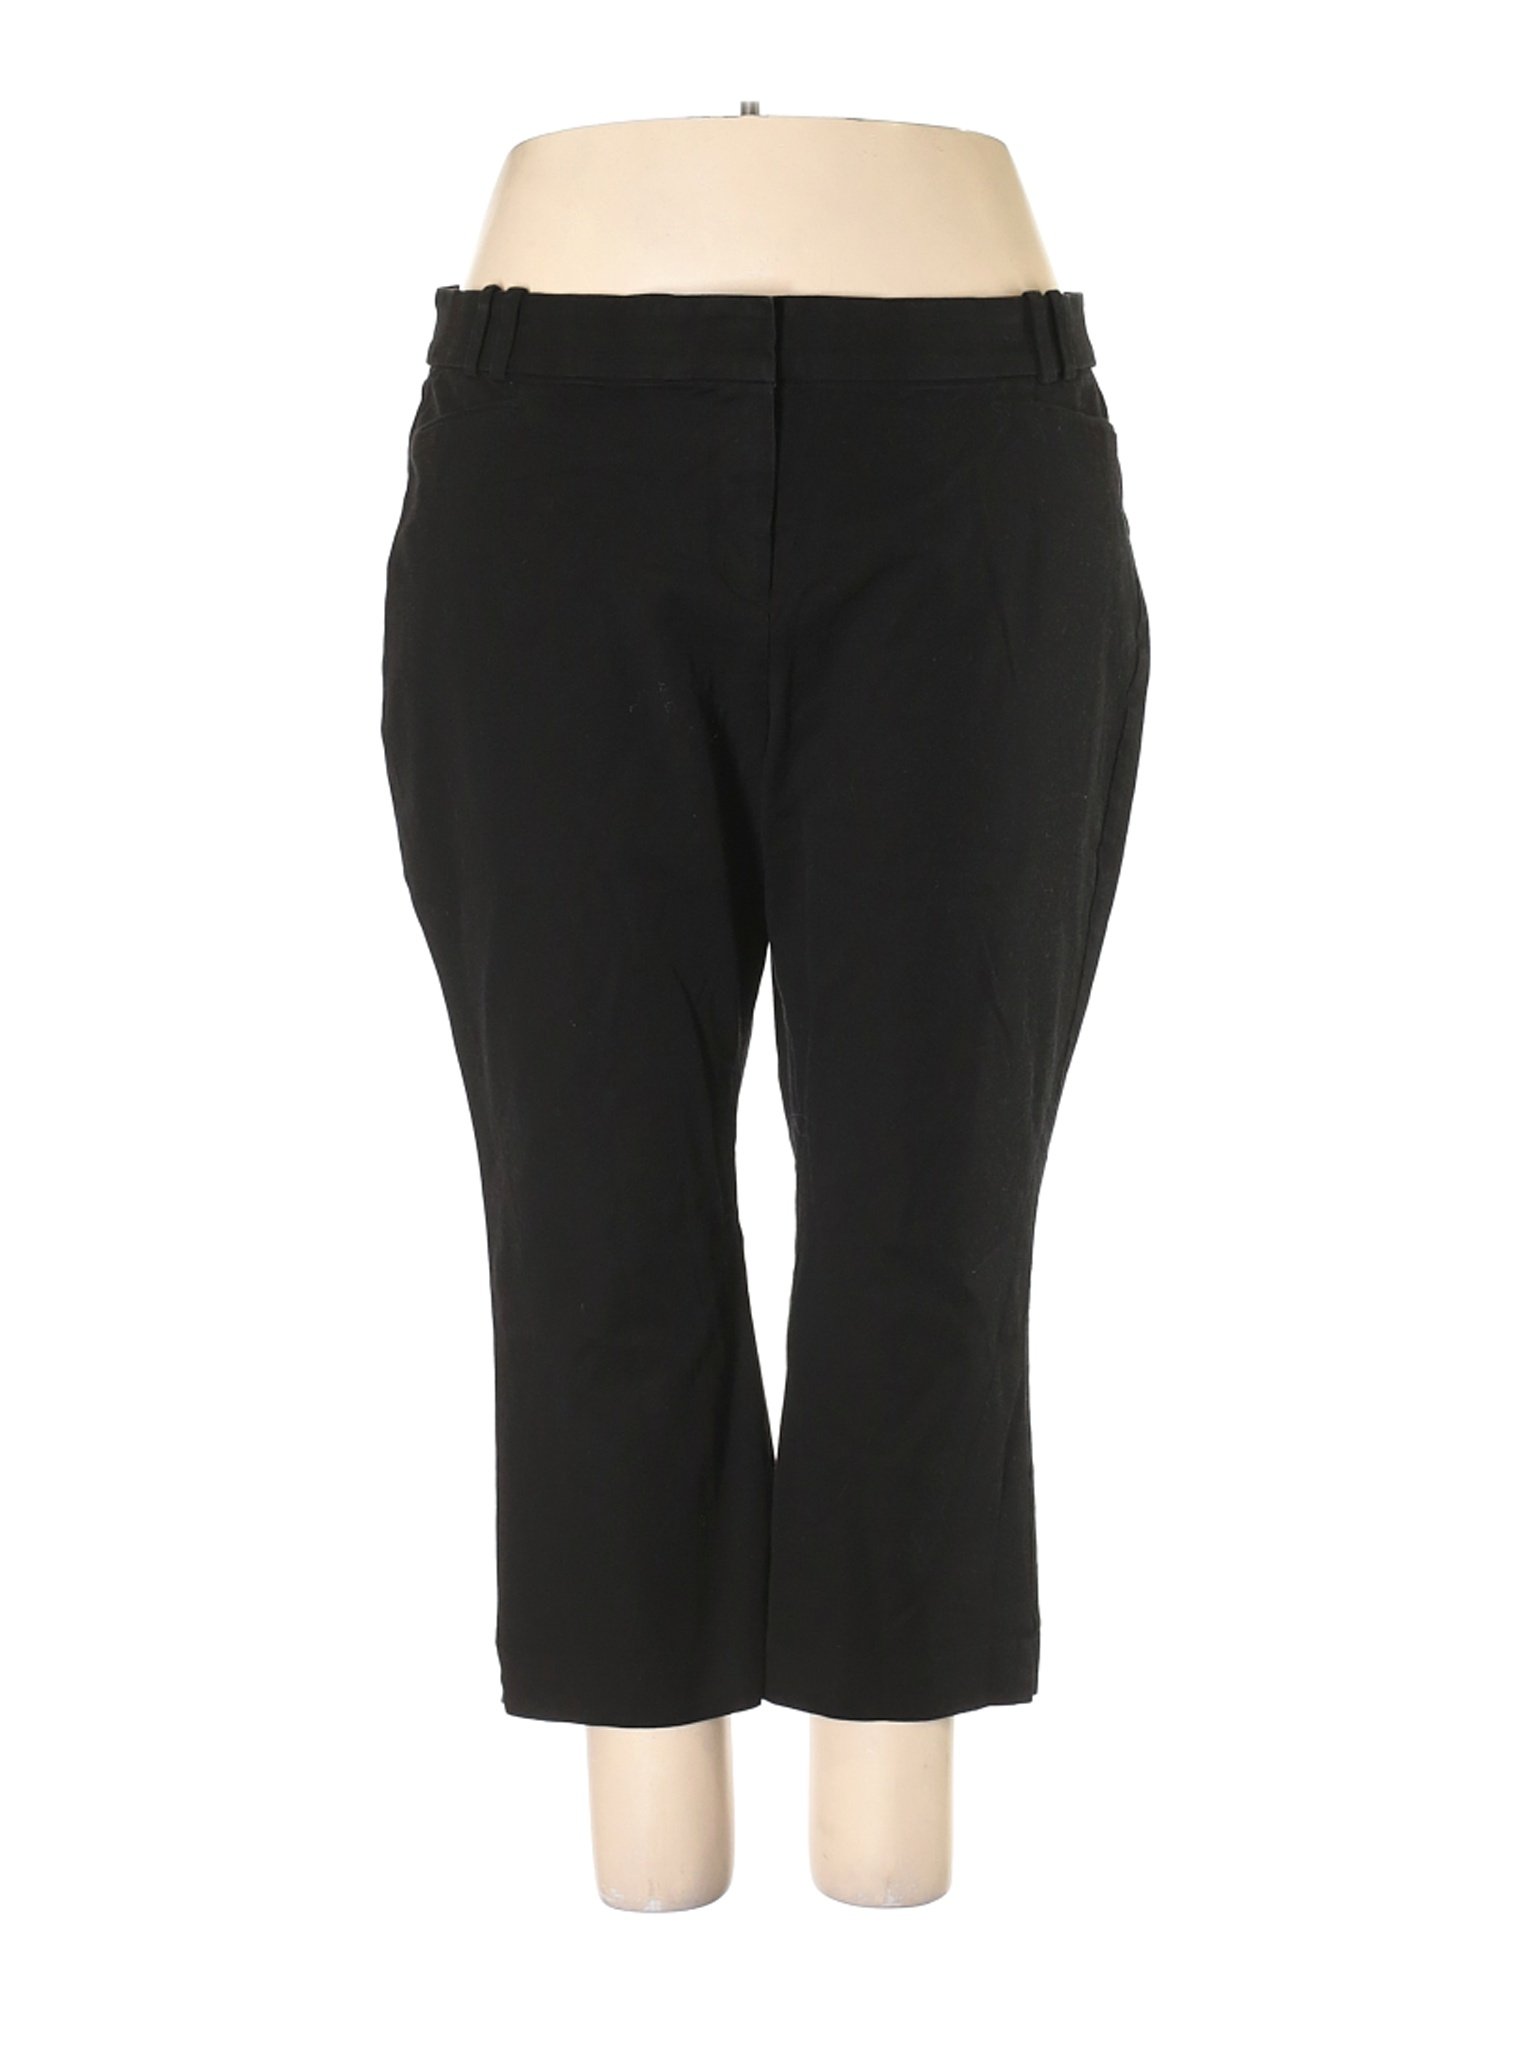 Lane Bryant Women Black Dress Pants 24 Plus | eBay